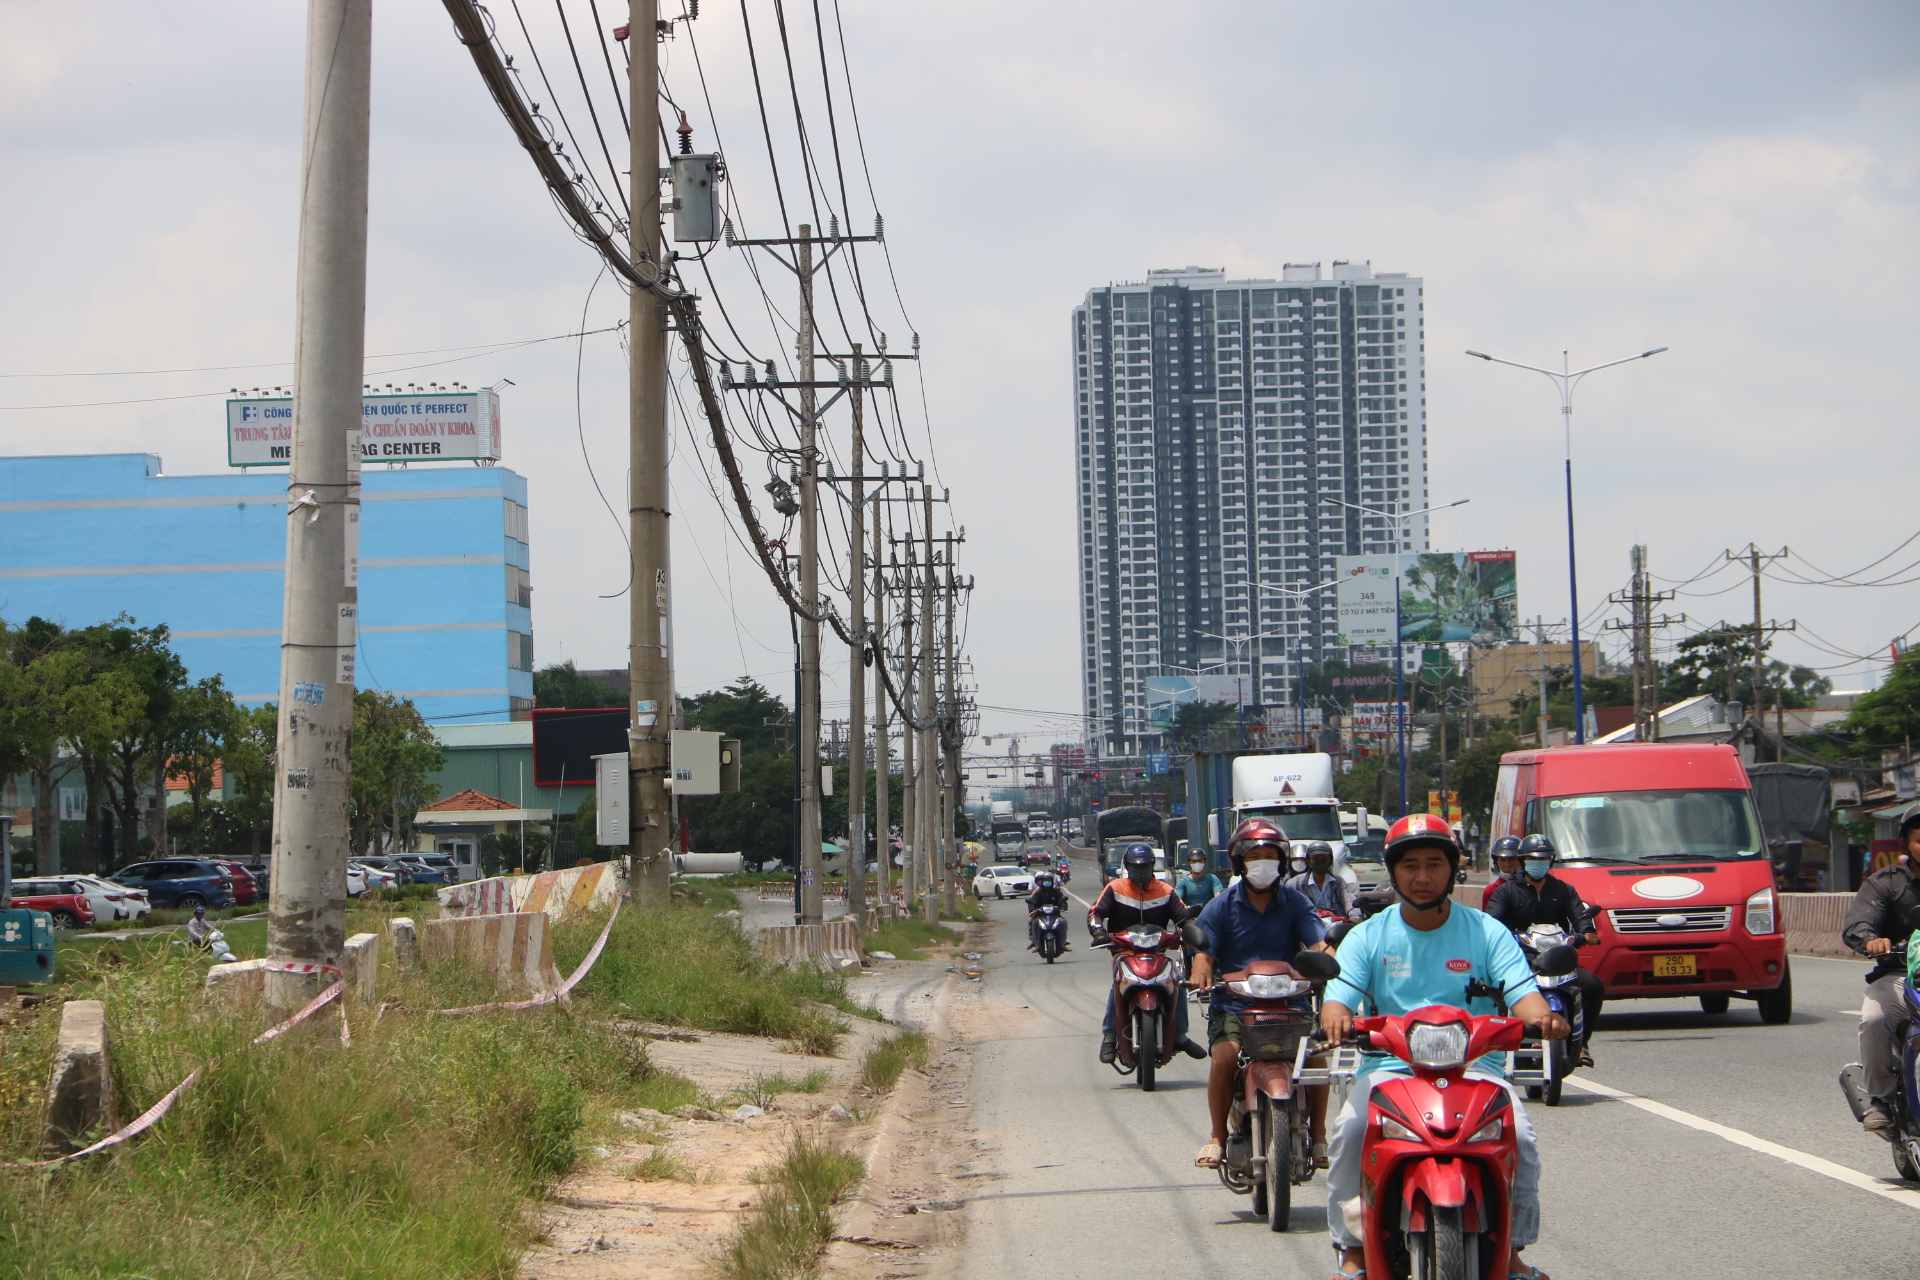 Đây là công trường dự án nâng cấp mở rộng Quốc lộ 13 đoạn qua thành phố Thuận An, tỉnh Bình Dương. Dự án đã được khởi công đến nay là 16 tháng. Tuy nhiên công tác giải phóng mặt bằng vẫn chưa thực hiện xong đ